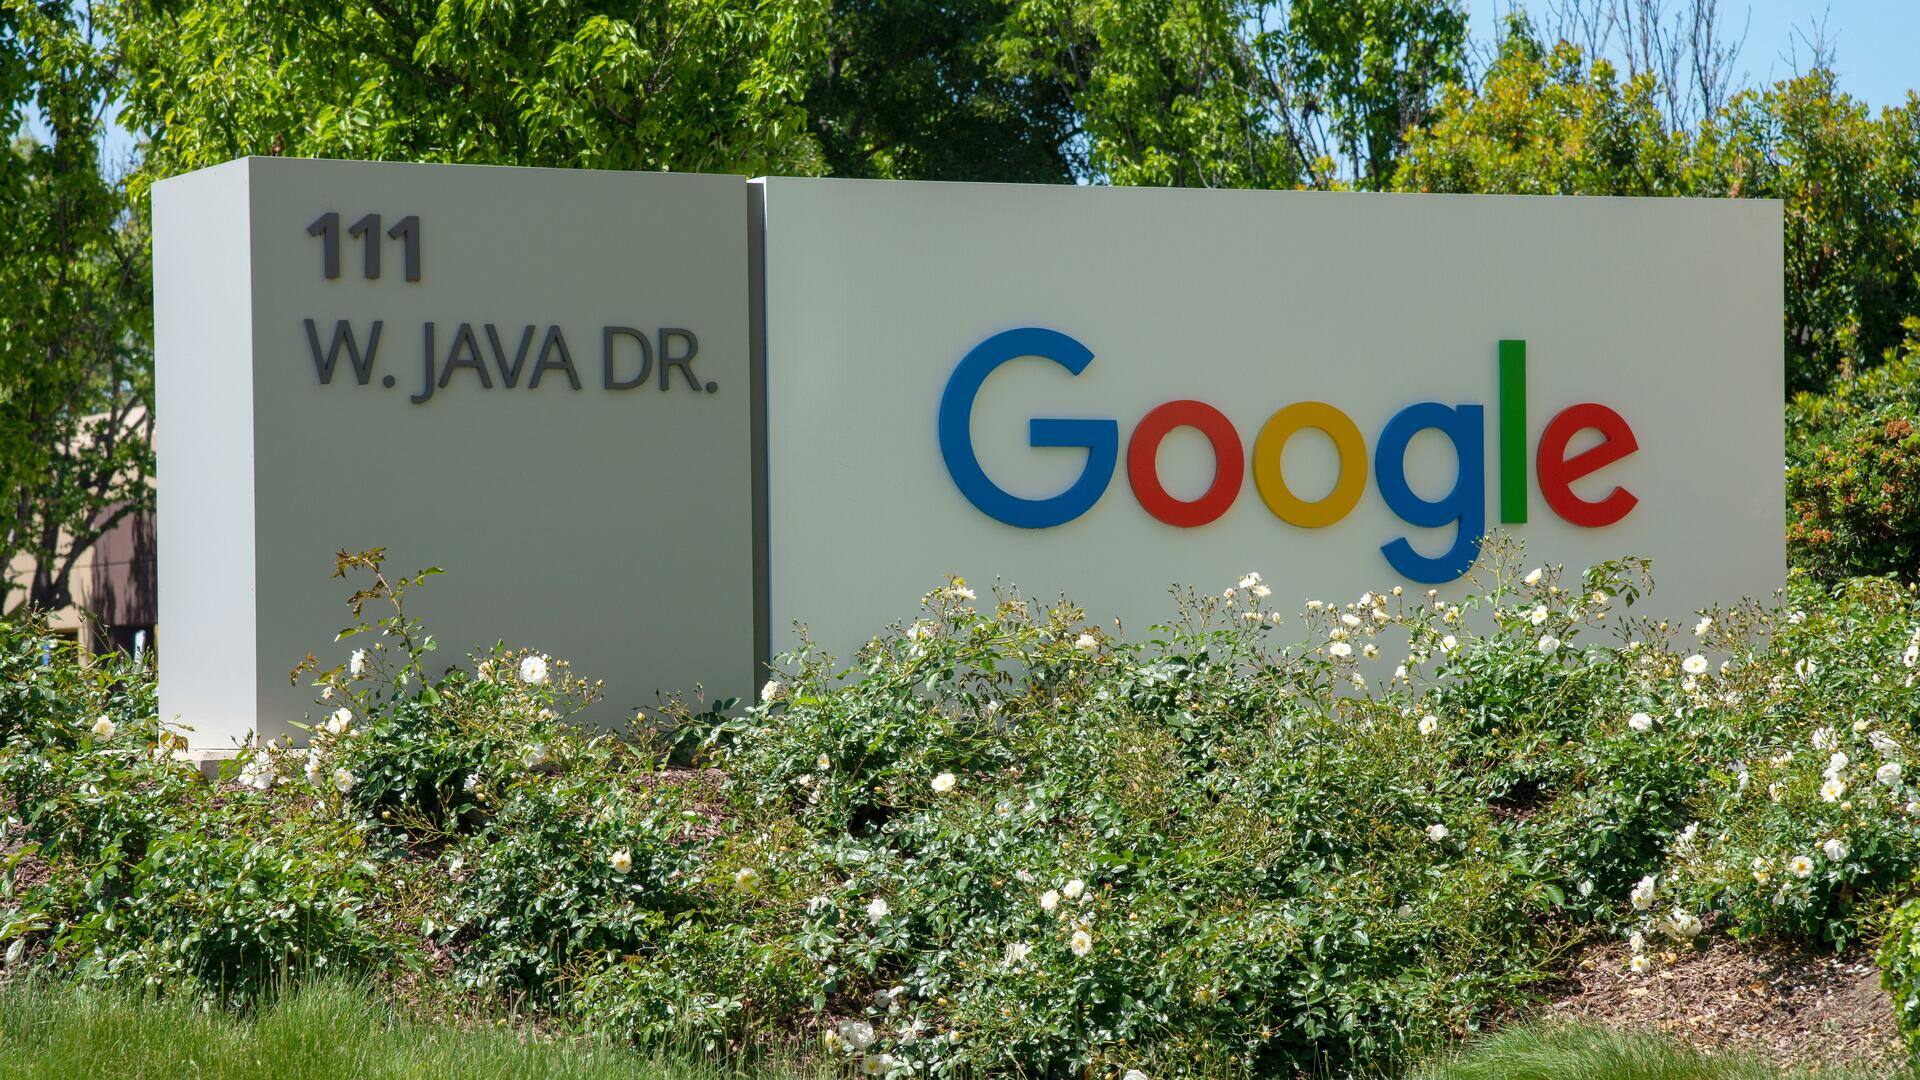 गूगल के कर्मचारियों ने छंटनी को लेकर लंदन में किया वॉकआउट